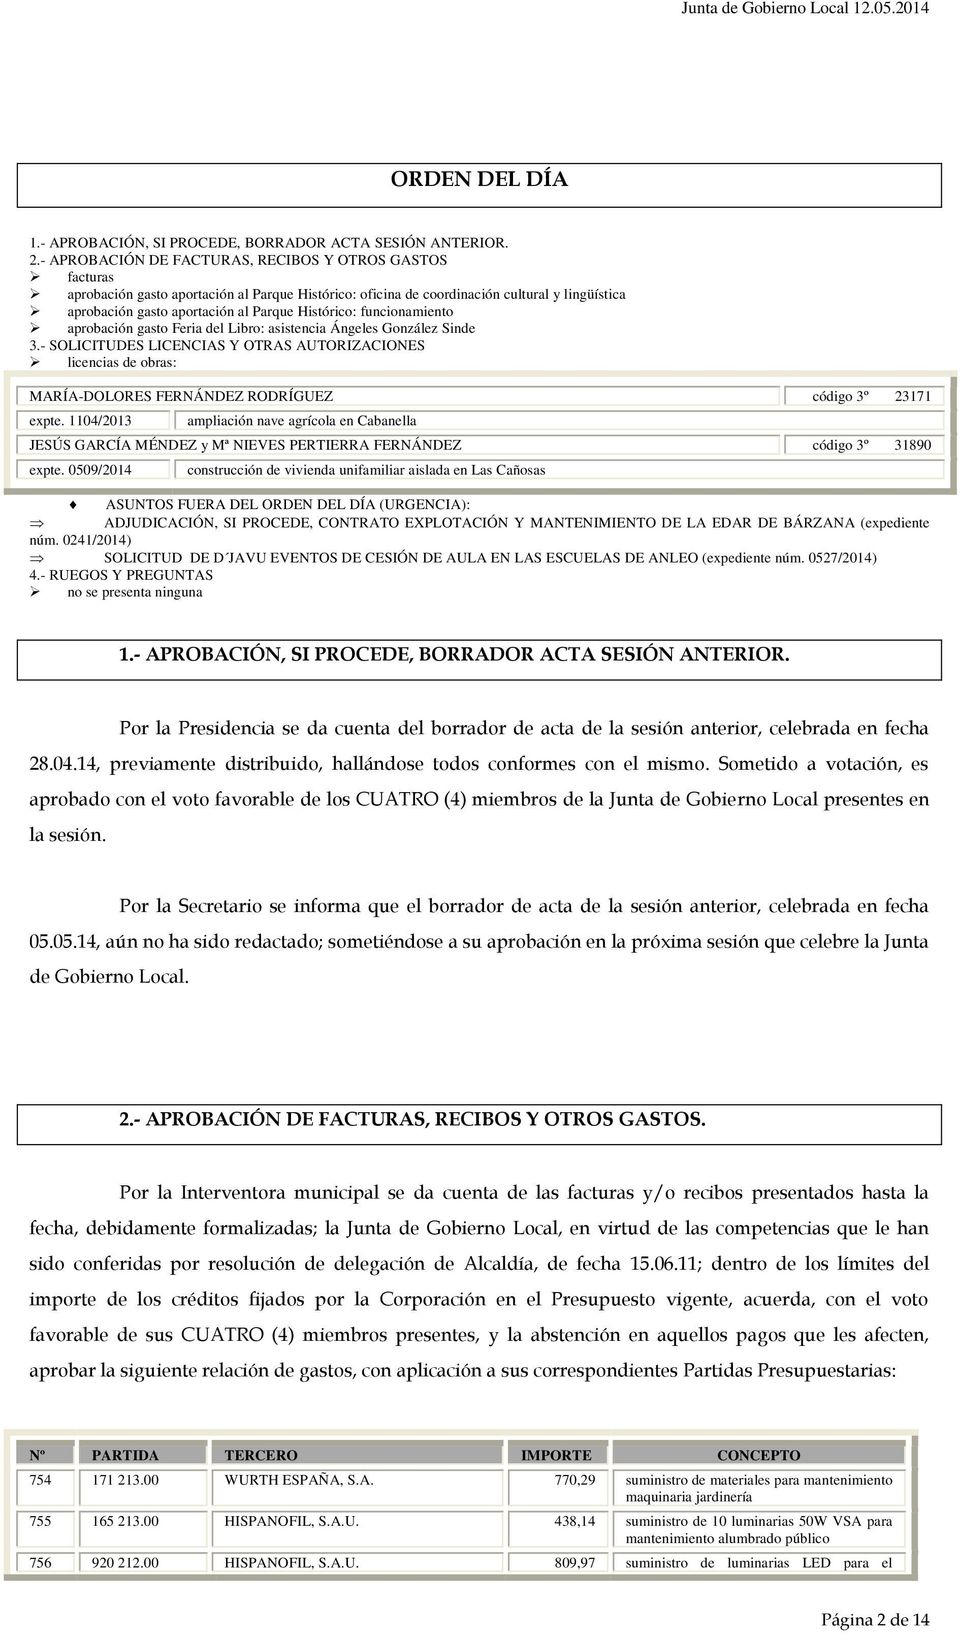 Histórico: funcionamiento aprobación gasto Feria del Libro: asistencia Ángeles González Sinde 3.